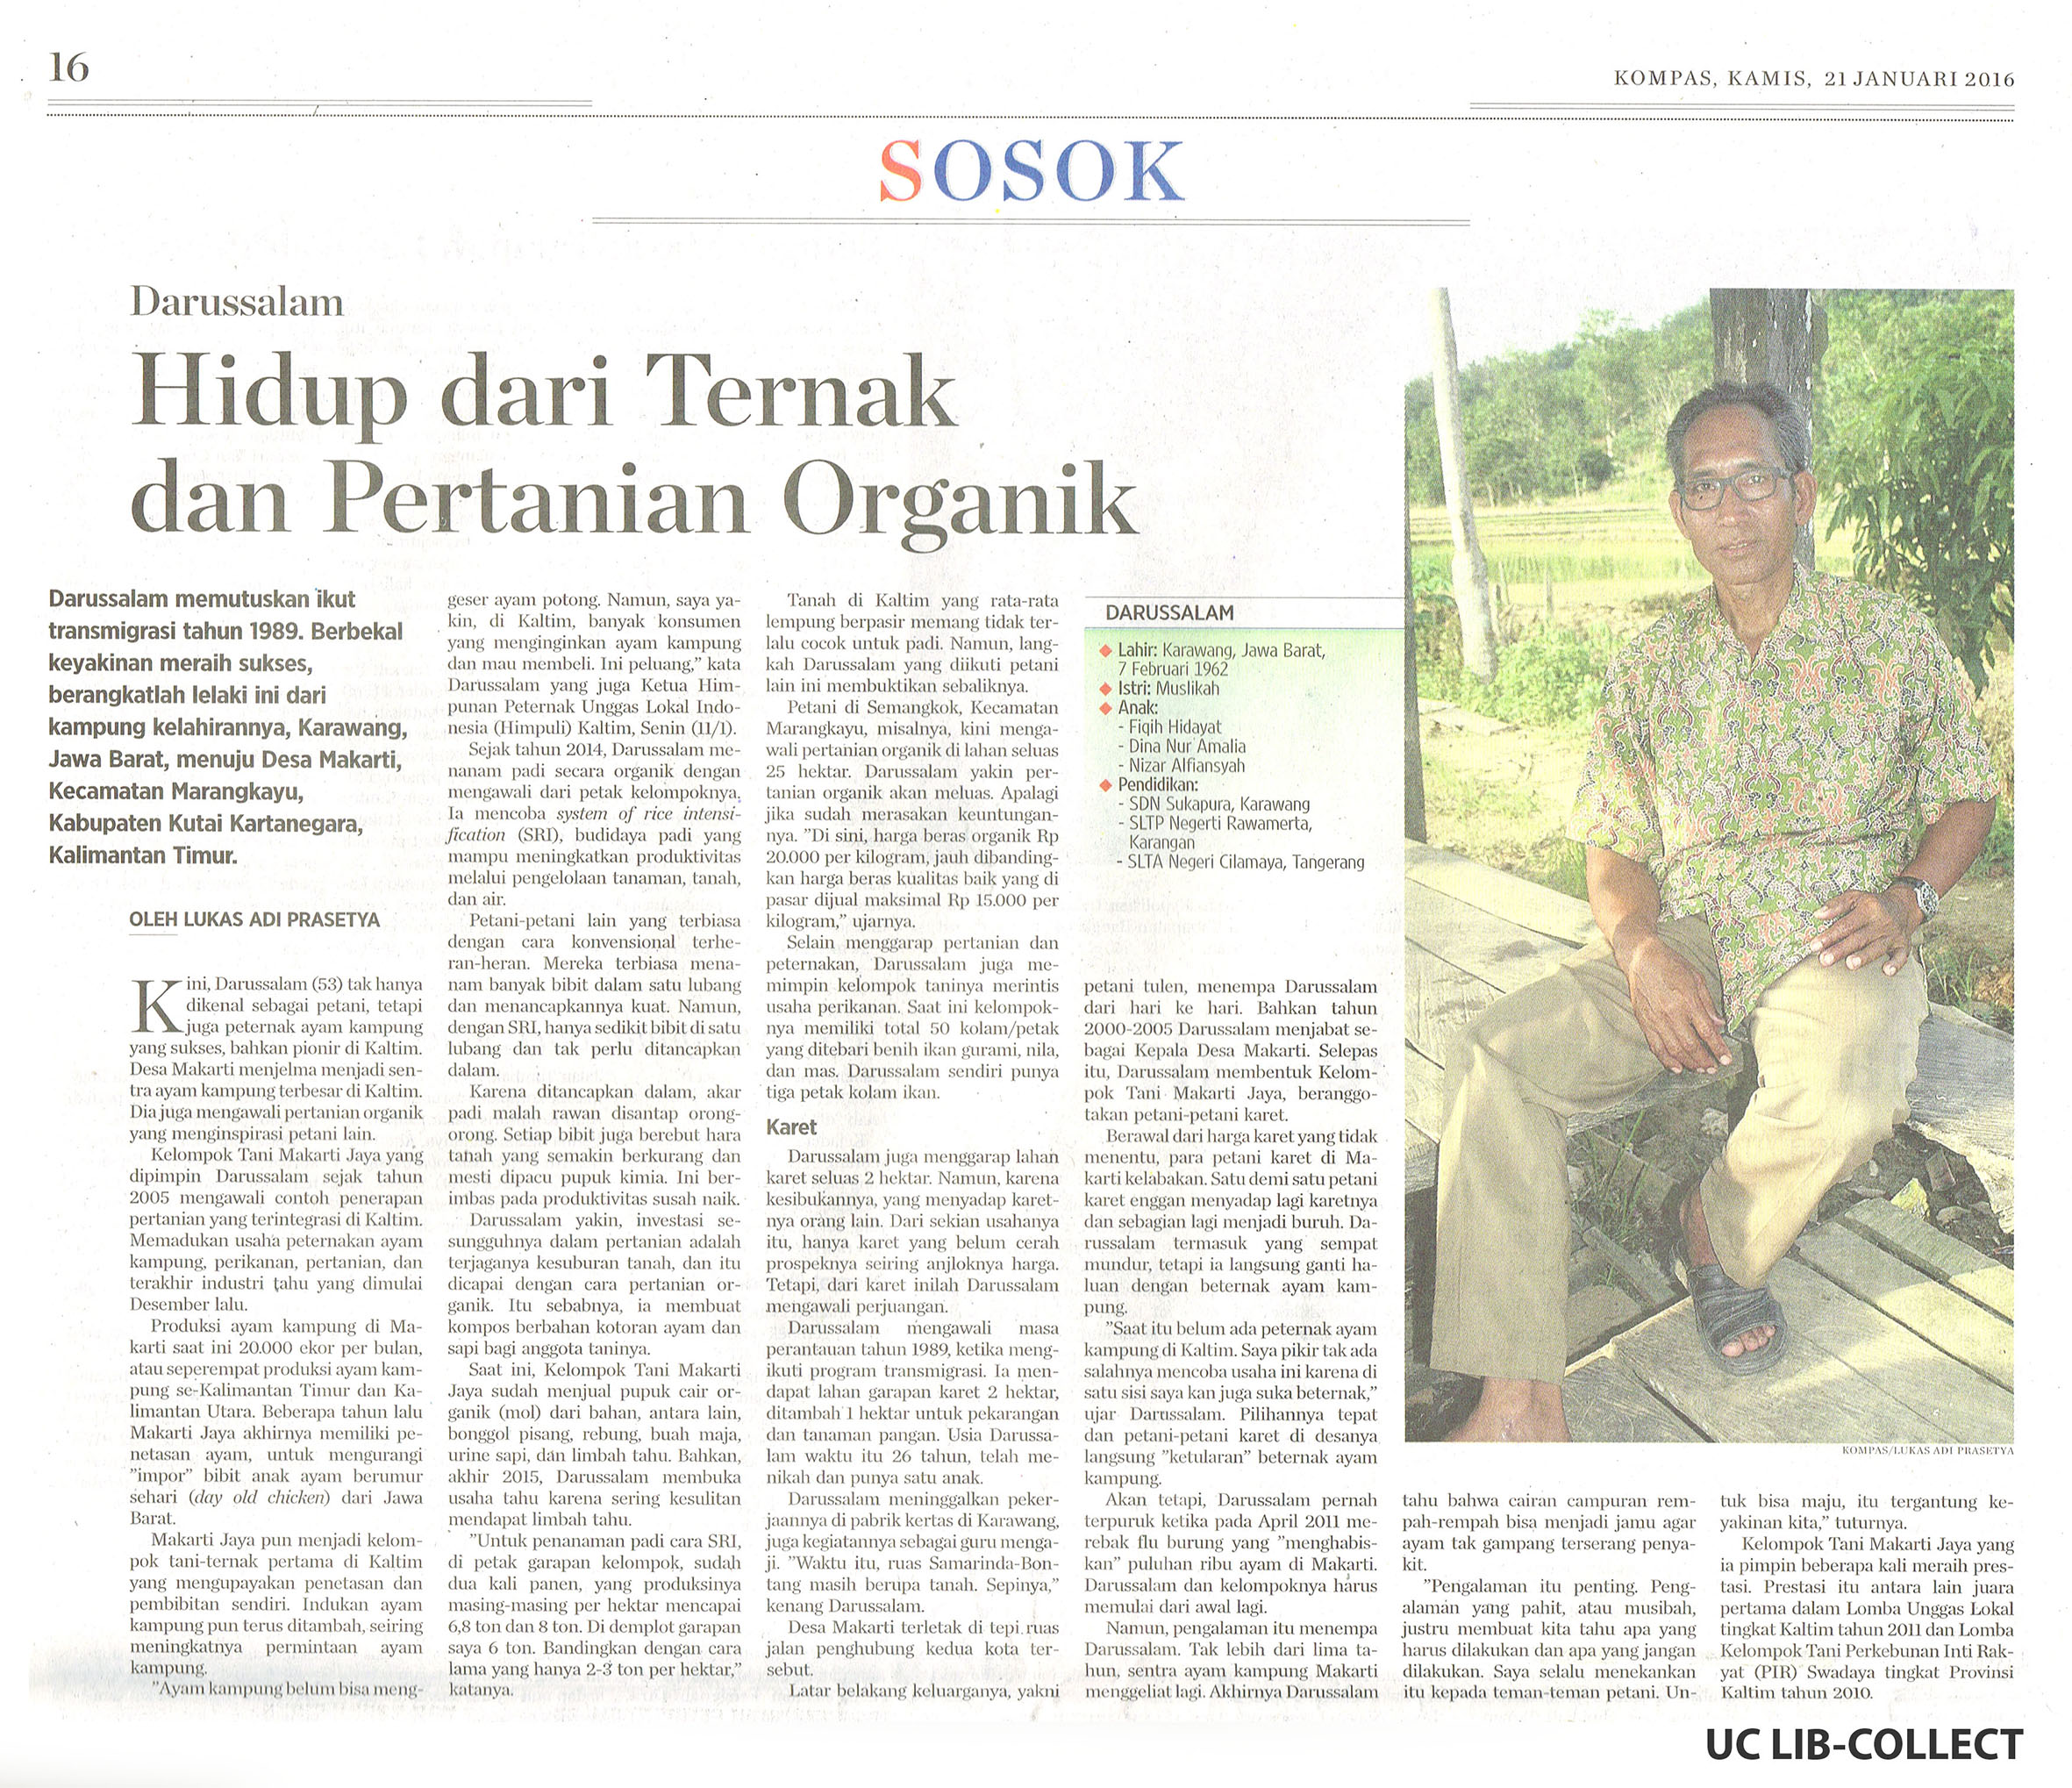 Darussalam Hidup dari Ternal dan Pertanian Organik. Kompas. 21 Januari 2016. Hal 16